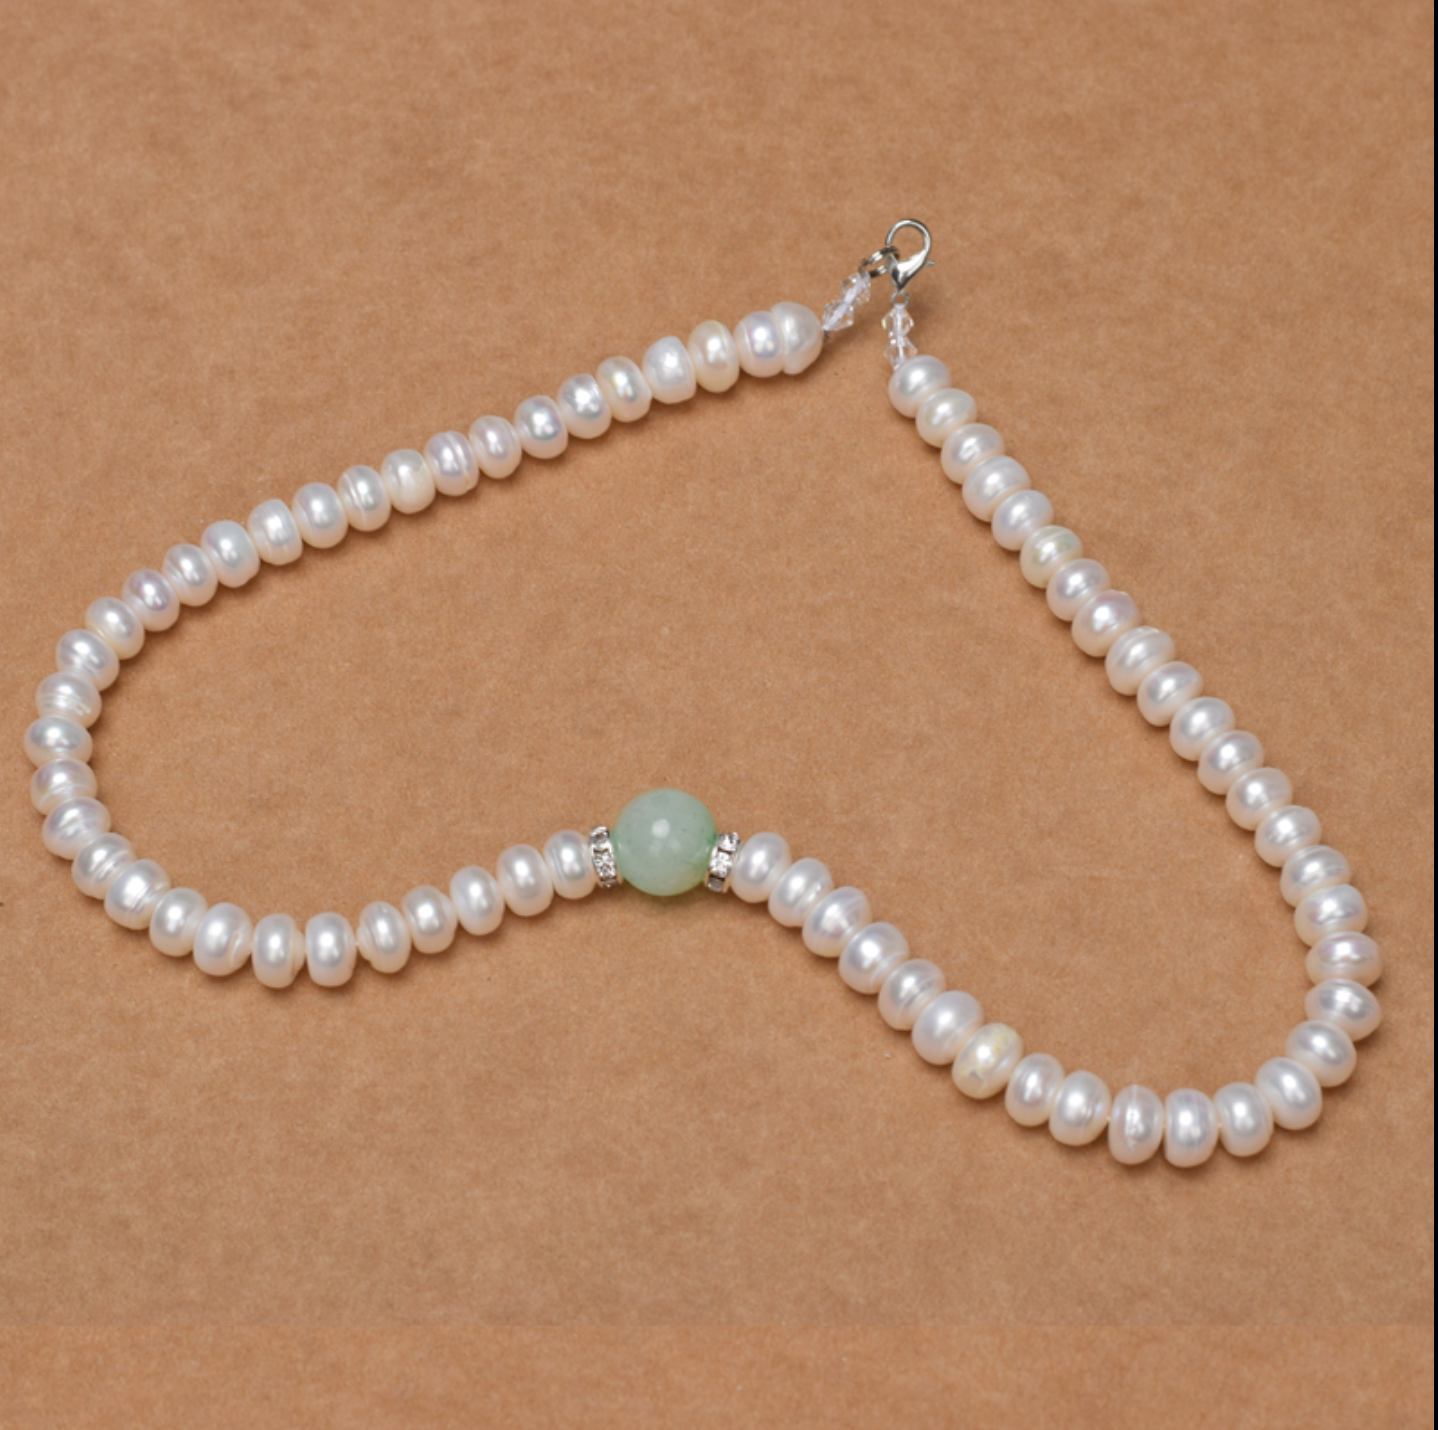 Halskette aus weißen und voluminösen Naturperlen – Eleganz auf höchstem Niveau! ✨